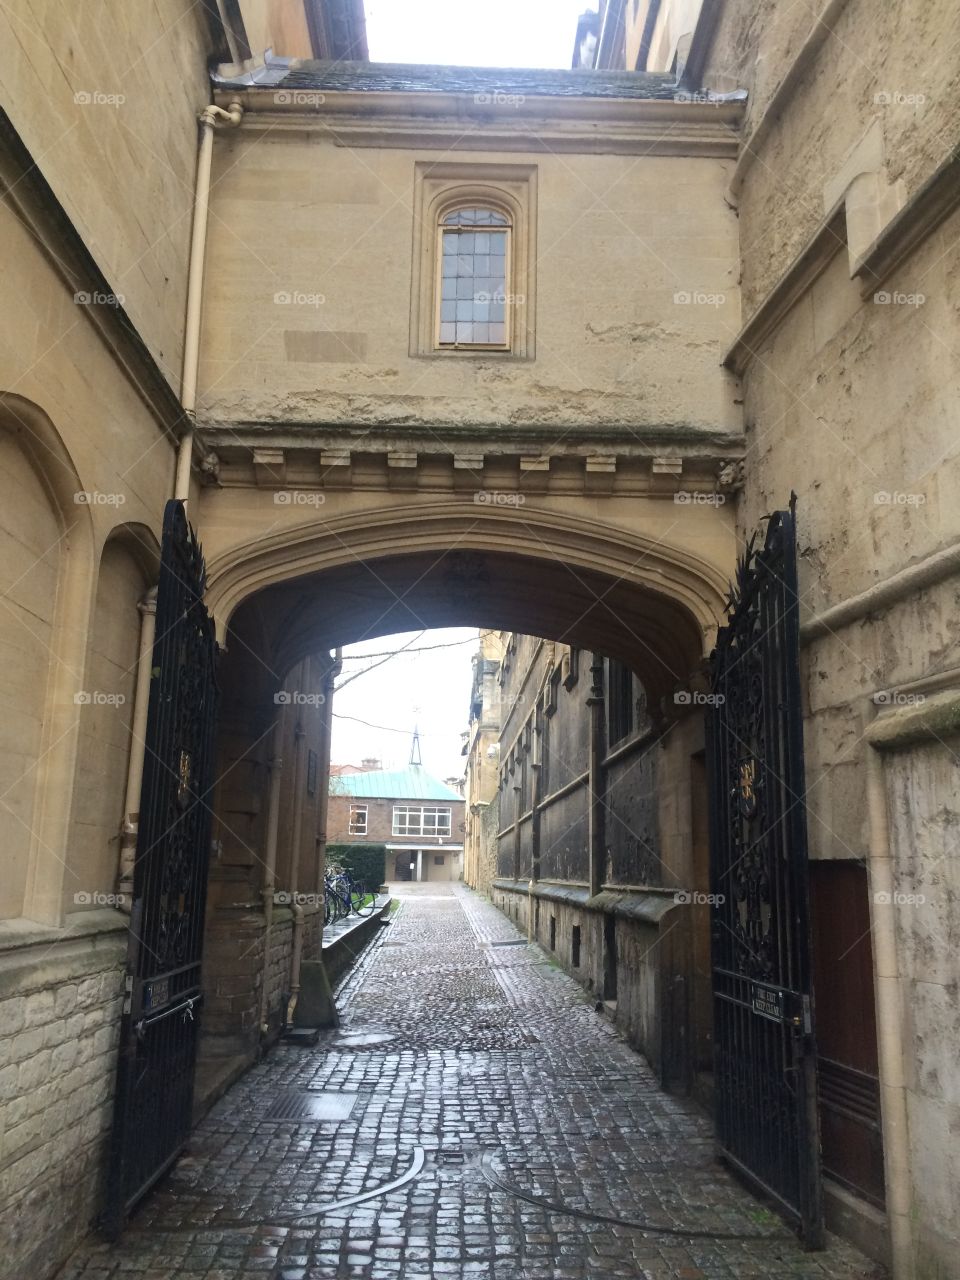 Arch Entrance Passage